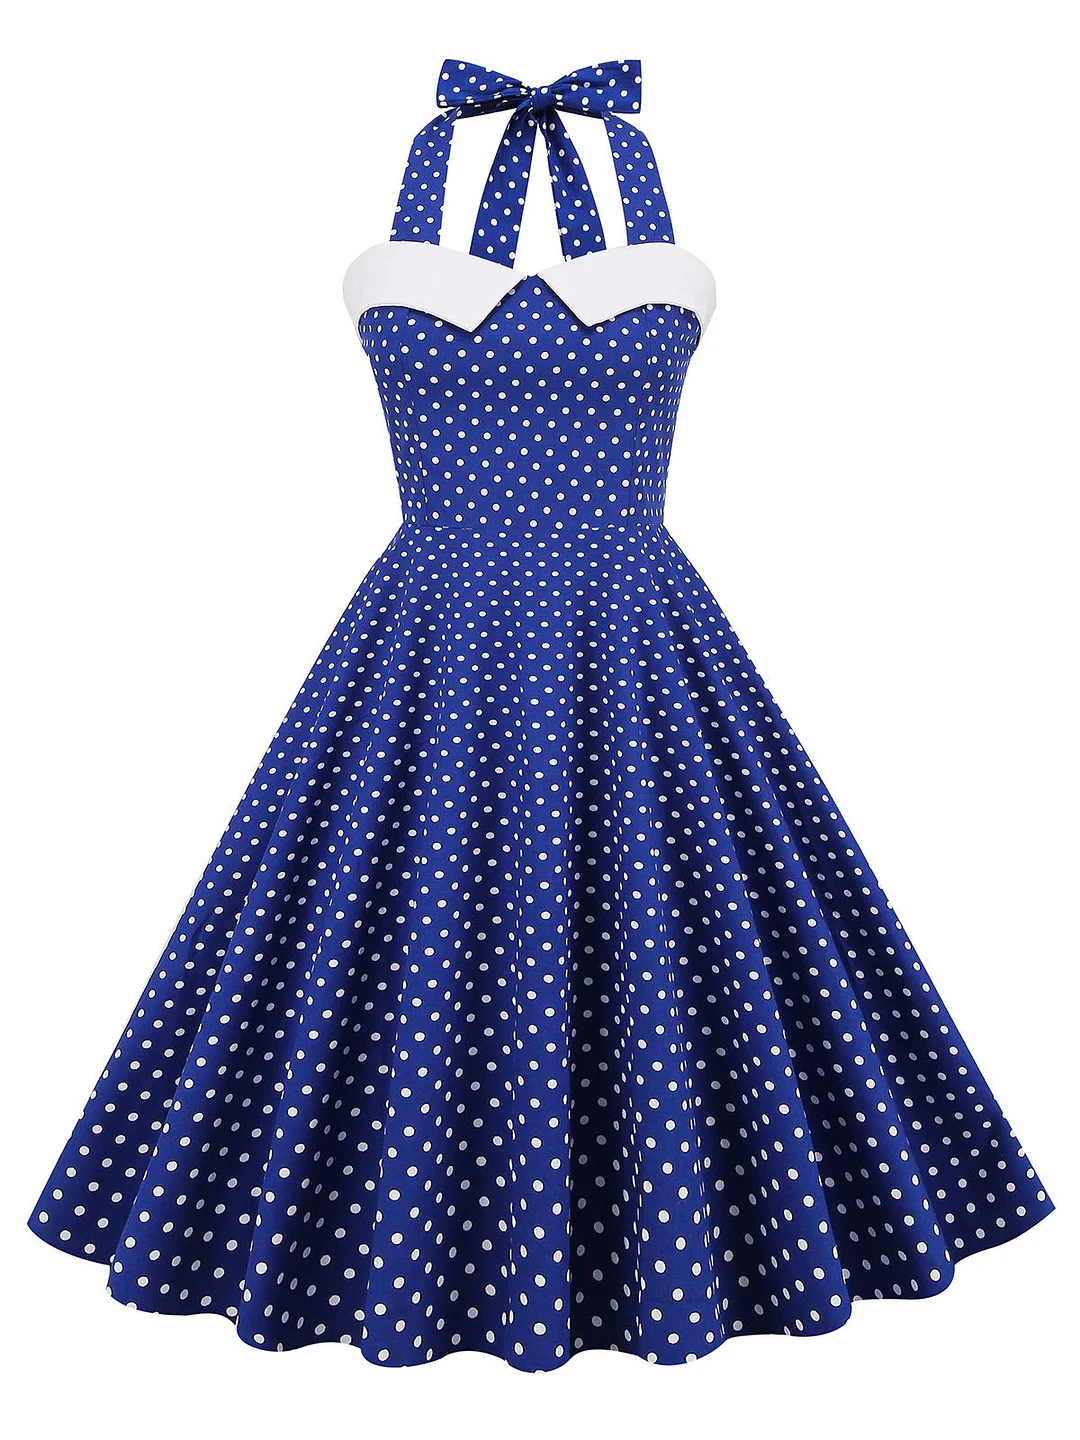 1950s Halter Polka Dot Swing Dress